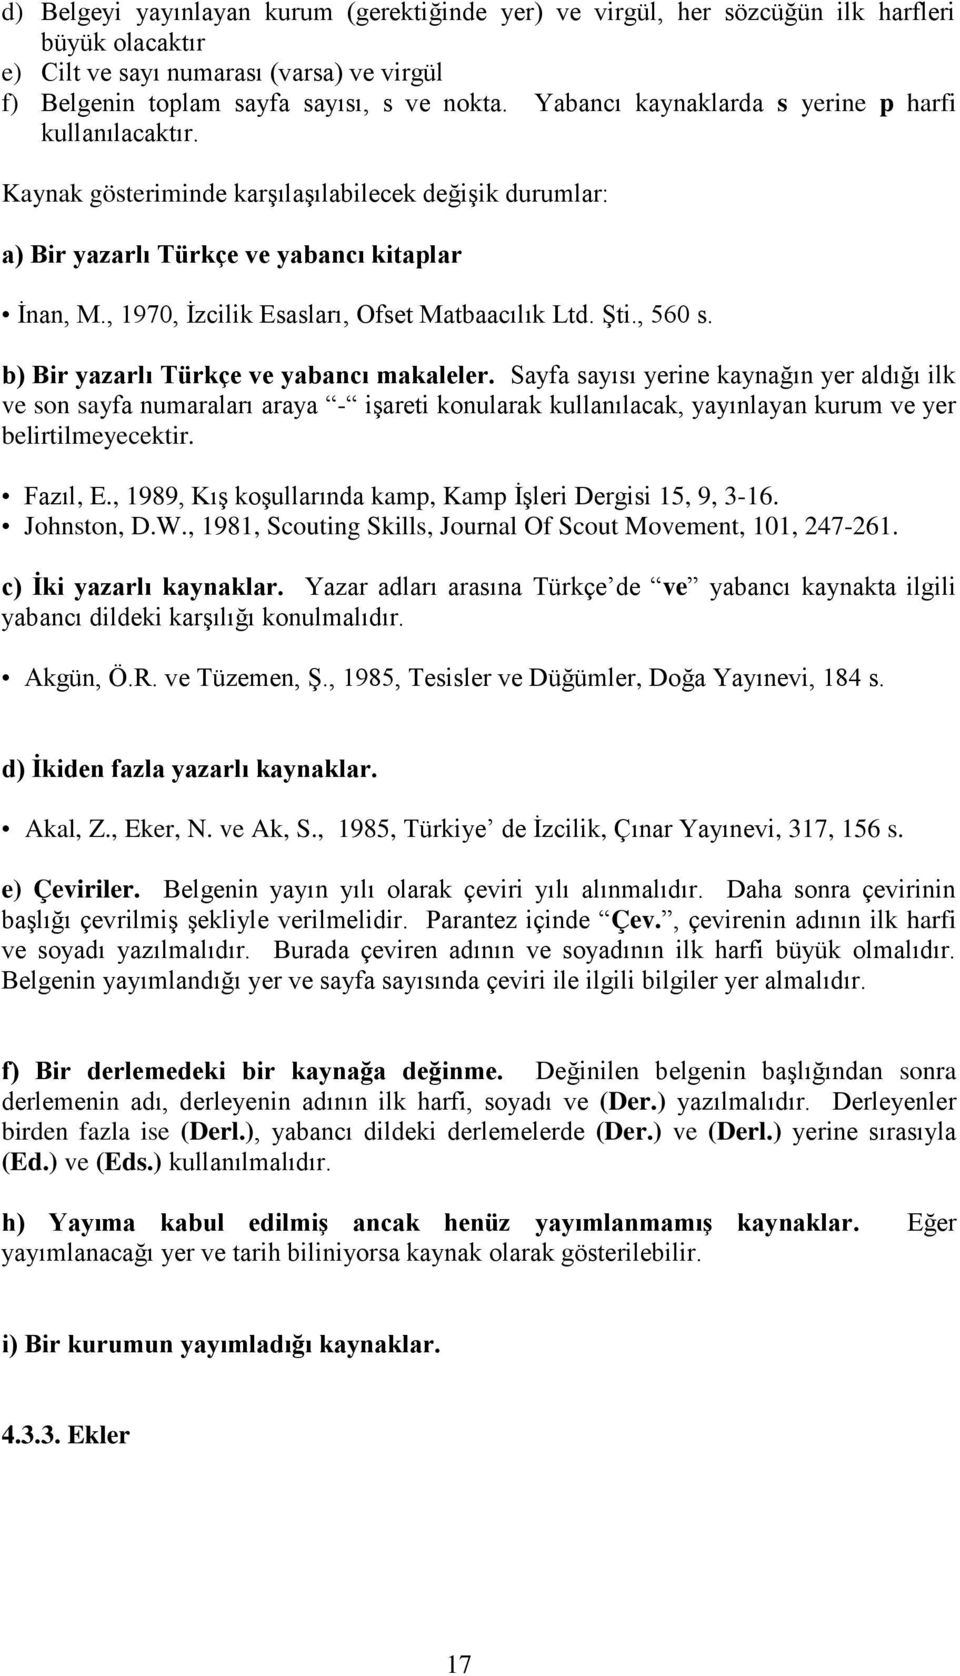 , 1970, Ġzcilik Esasları, Ofset Matbaacılık Ltd. ġti., 560 s. b) Bir yazarlı Türkçe ve yabancı makaleler.